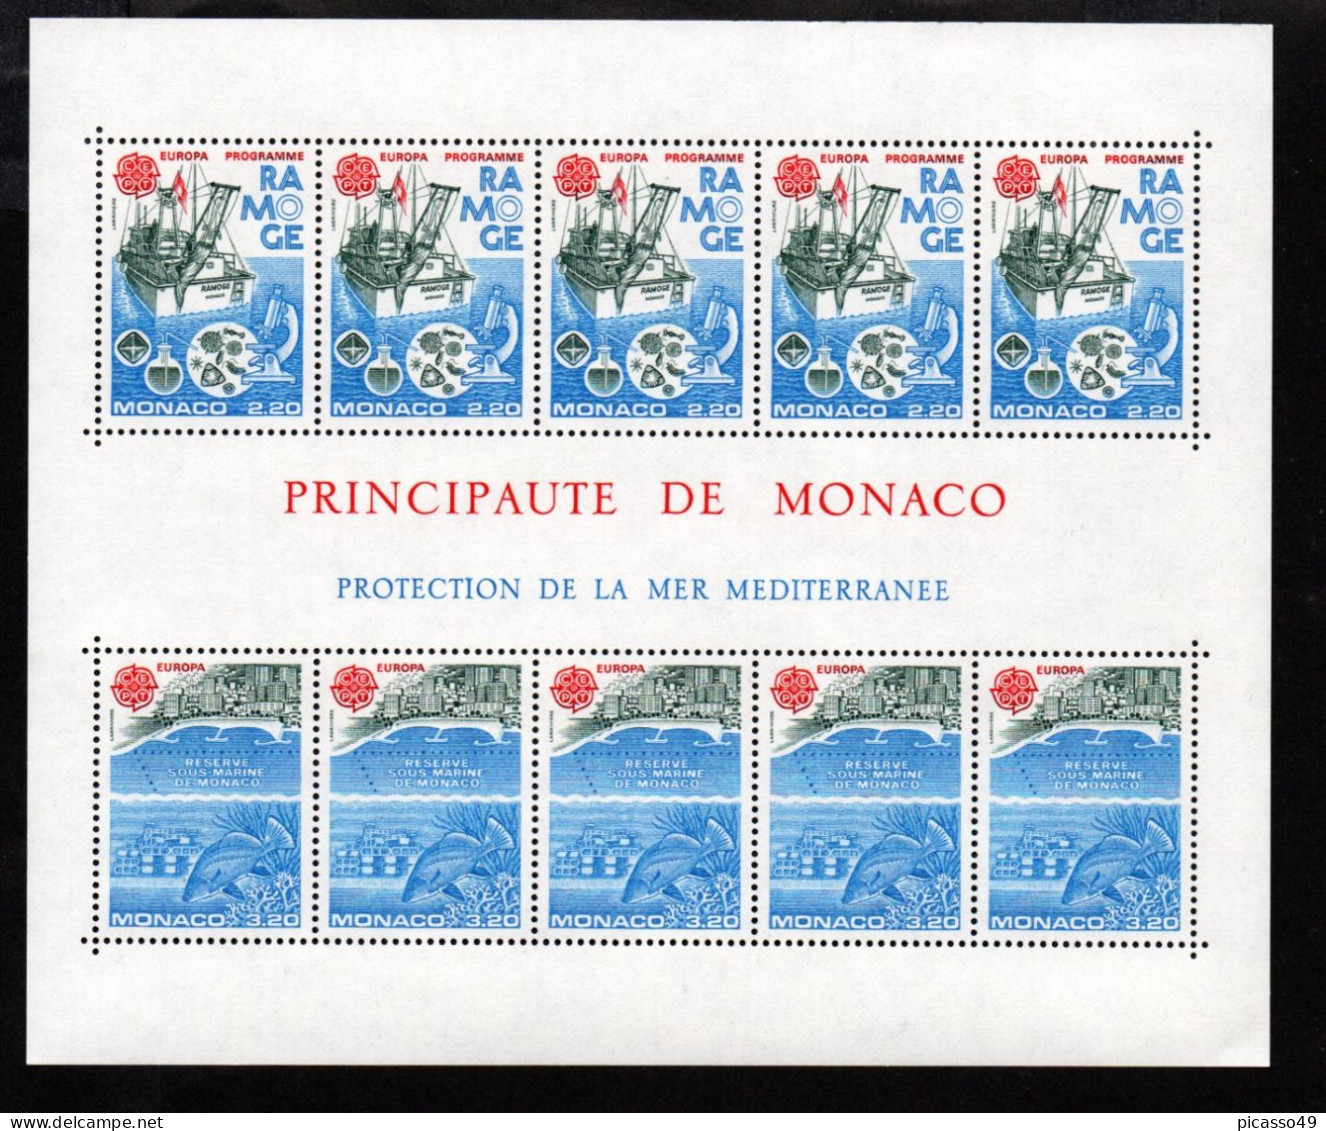 Monaco ,lot de 48 blocs ** , voir description